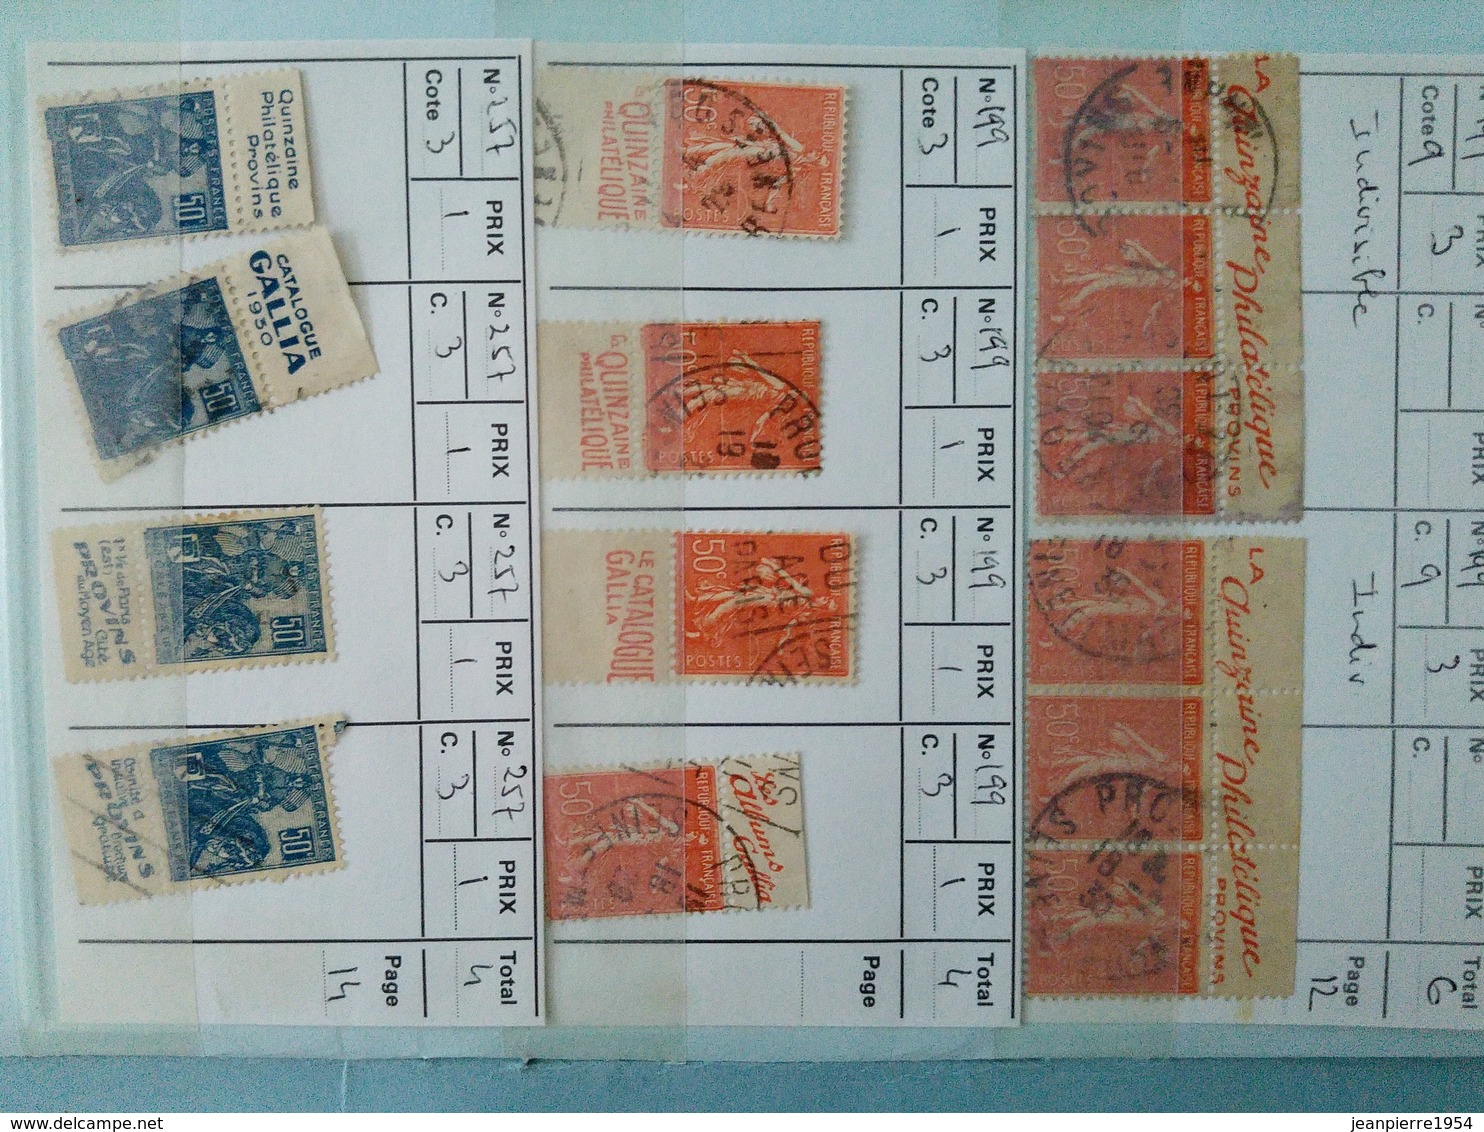 anciens timbres dfrançais a belle cote